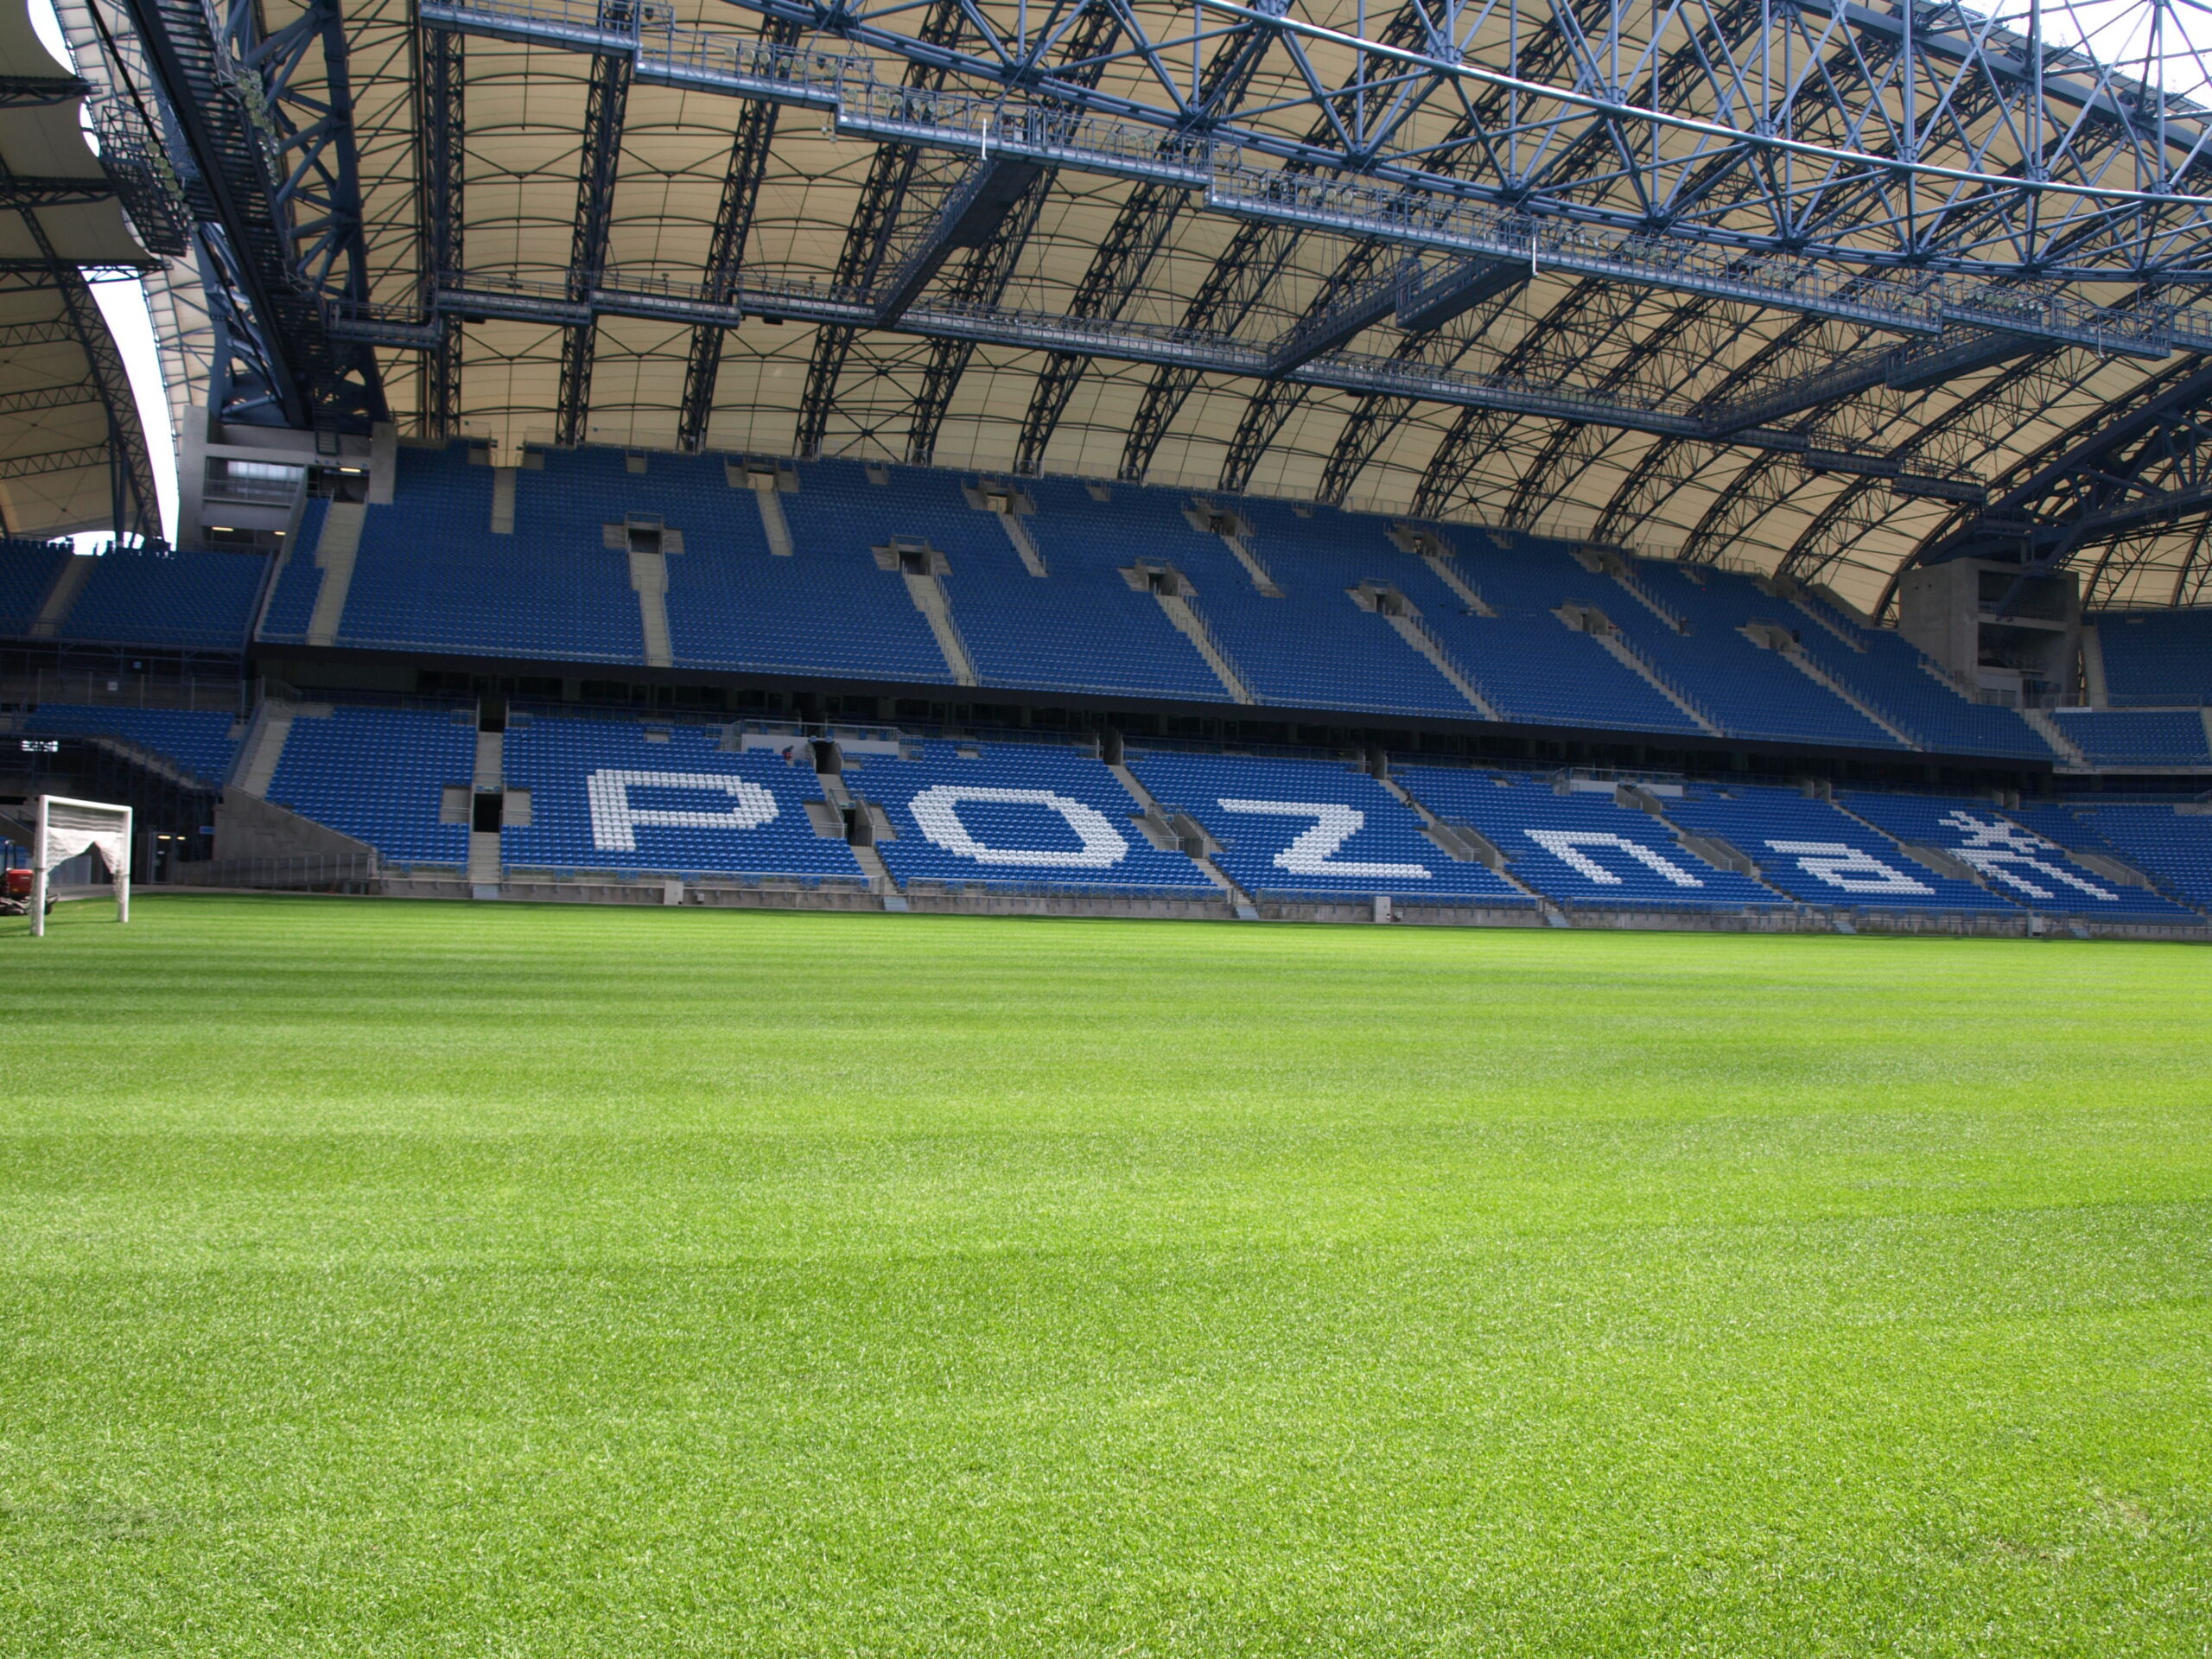 Mecz Polska-Islandia na Stadionie Miejskim w Poznaniu: zmiany w organizacji ruchu w okolicy